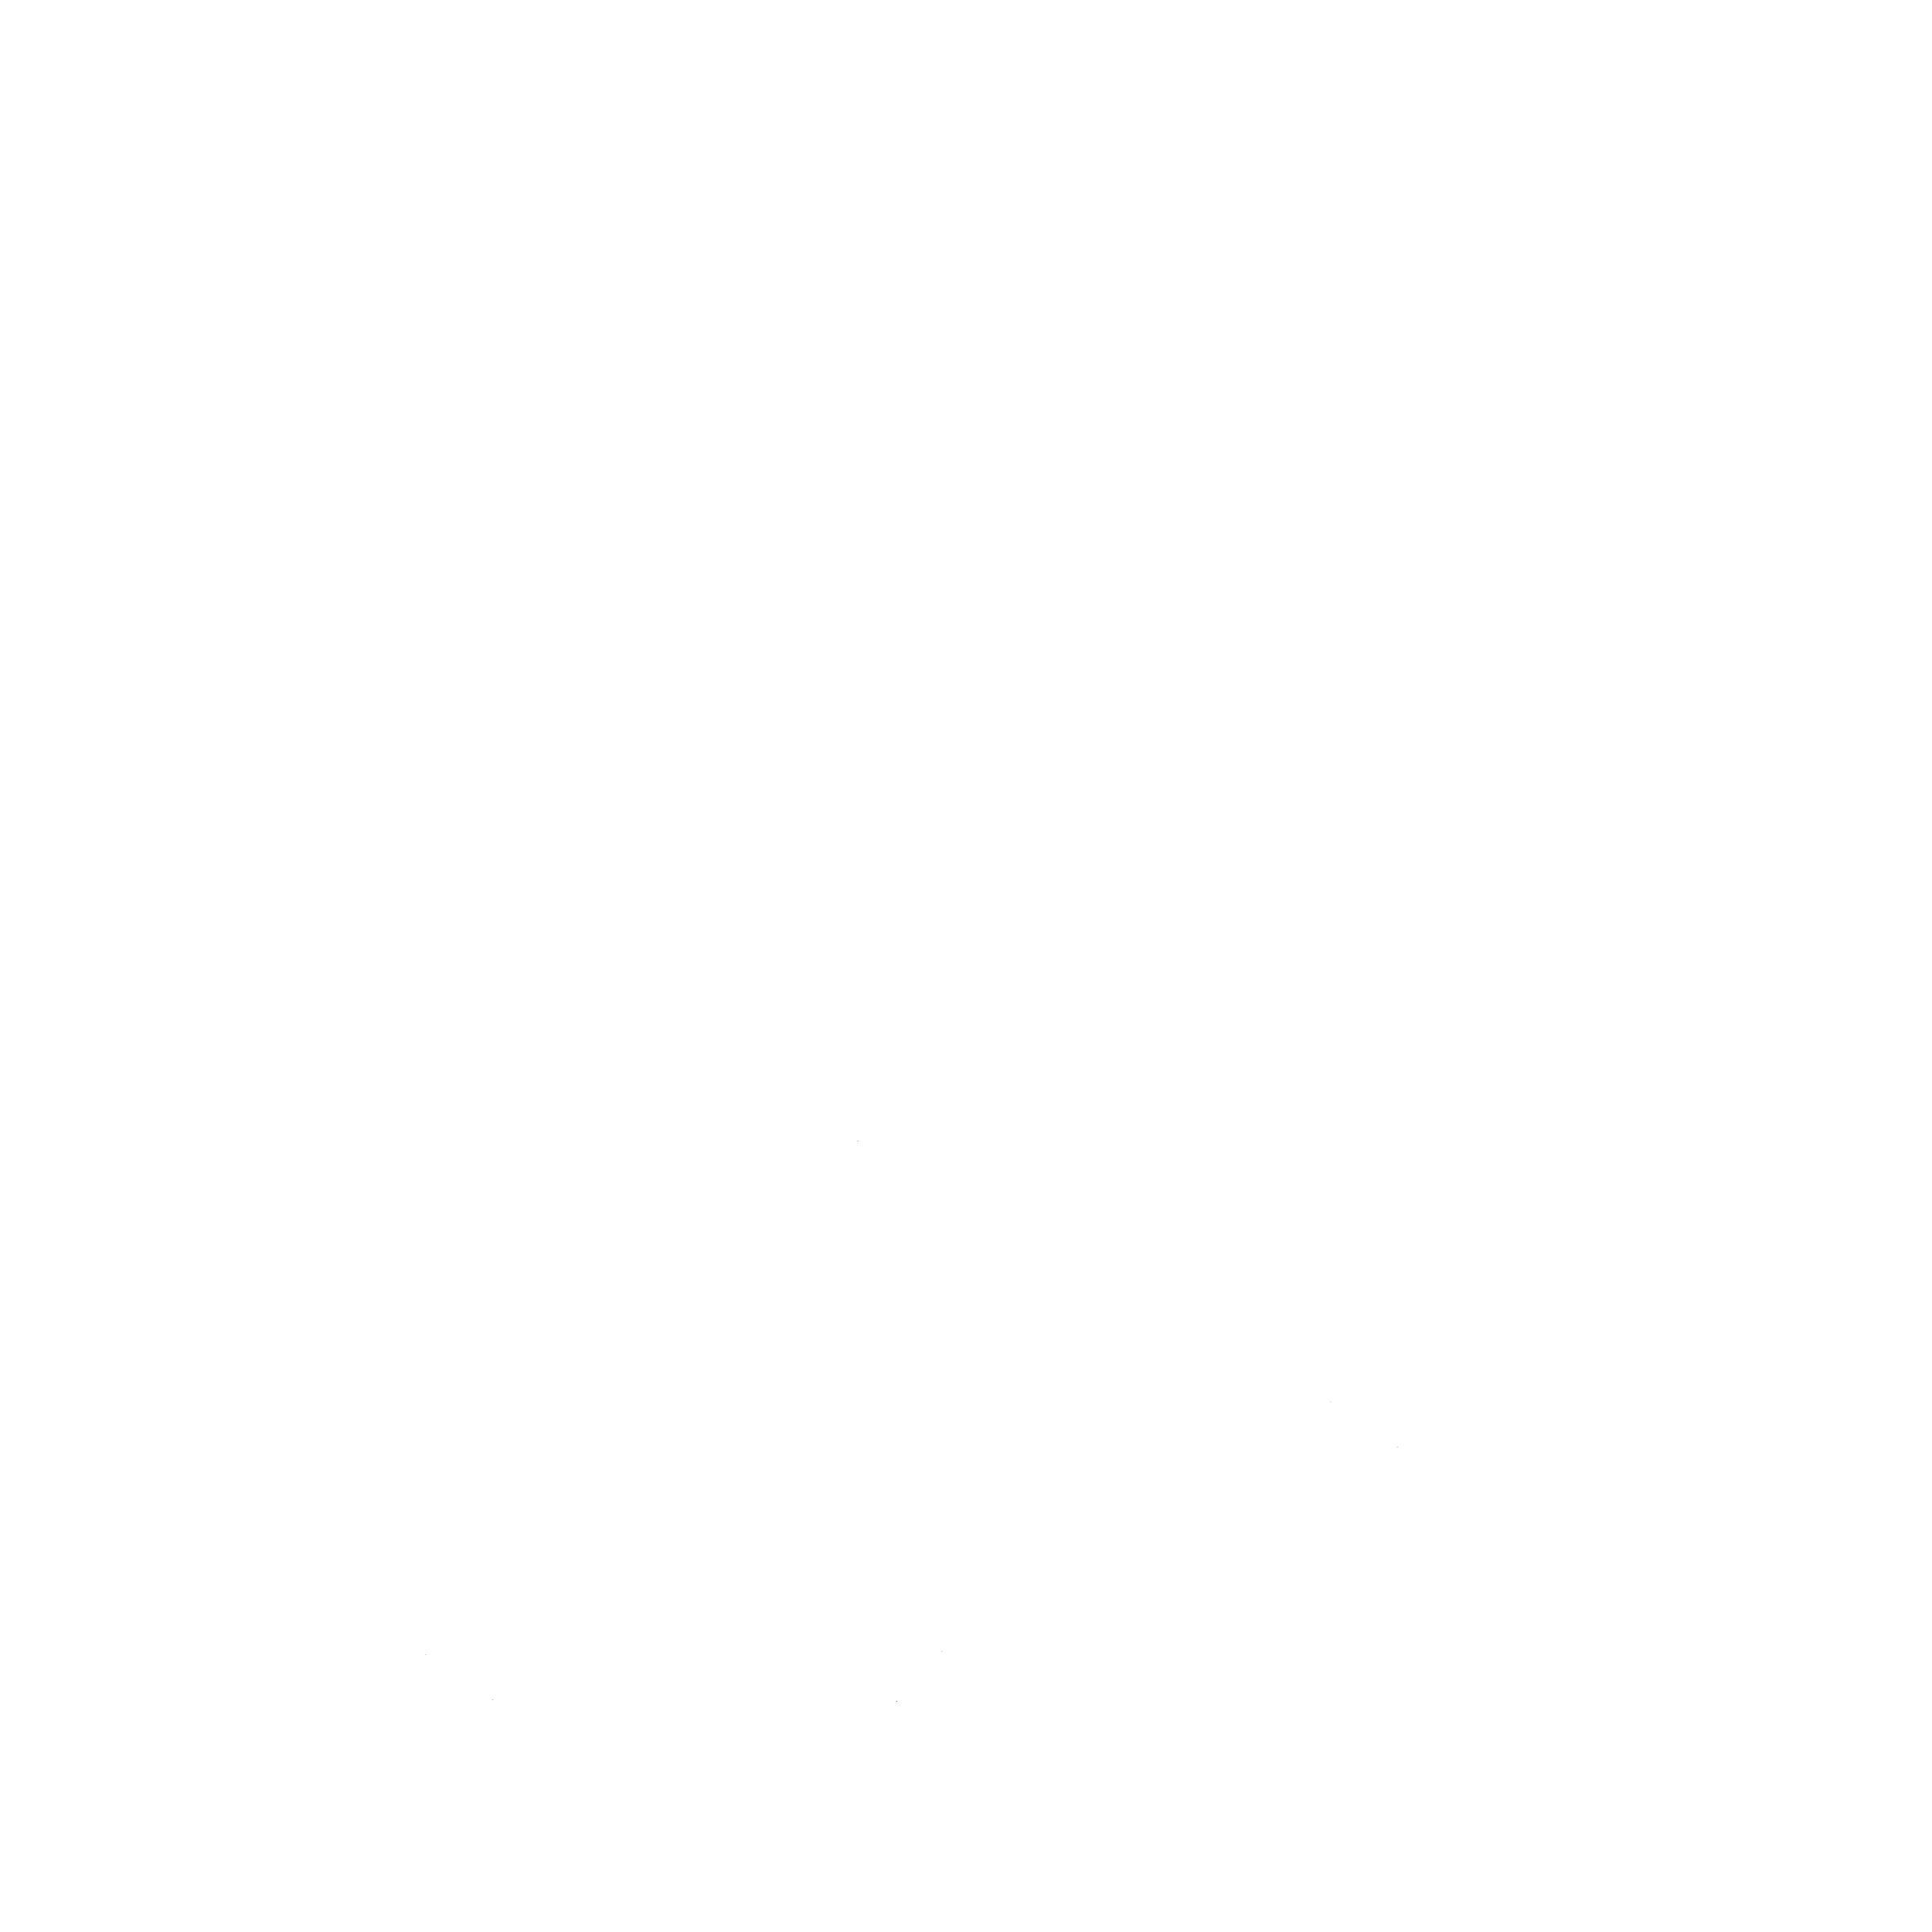 Homeless Children's Network